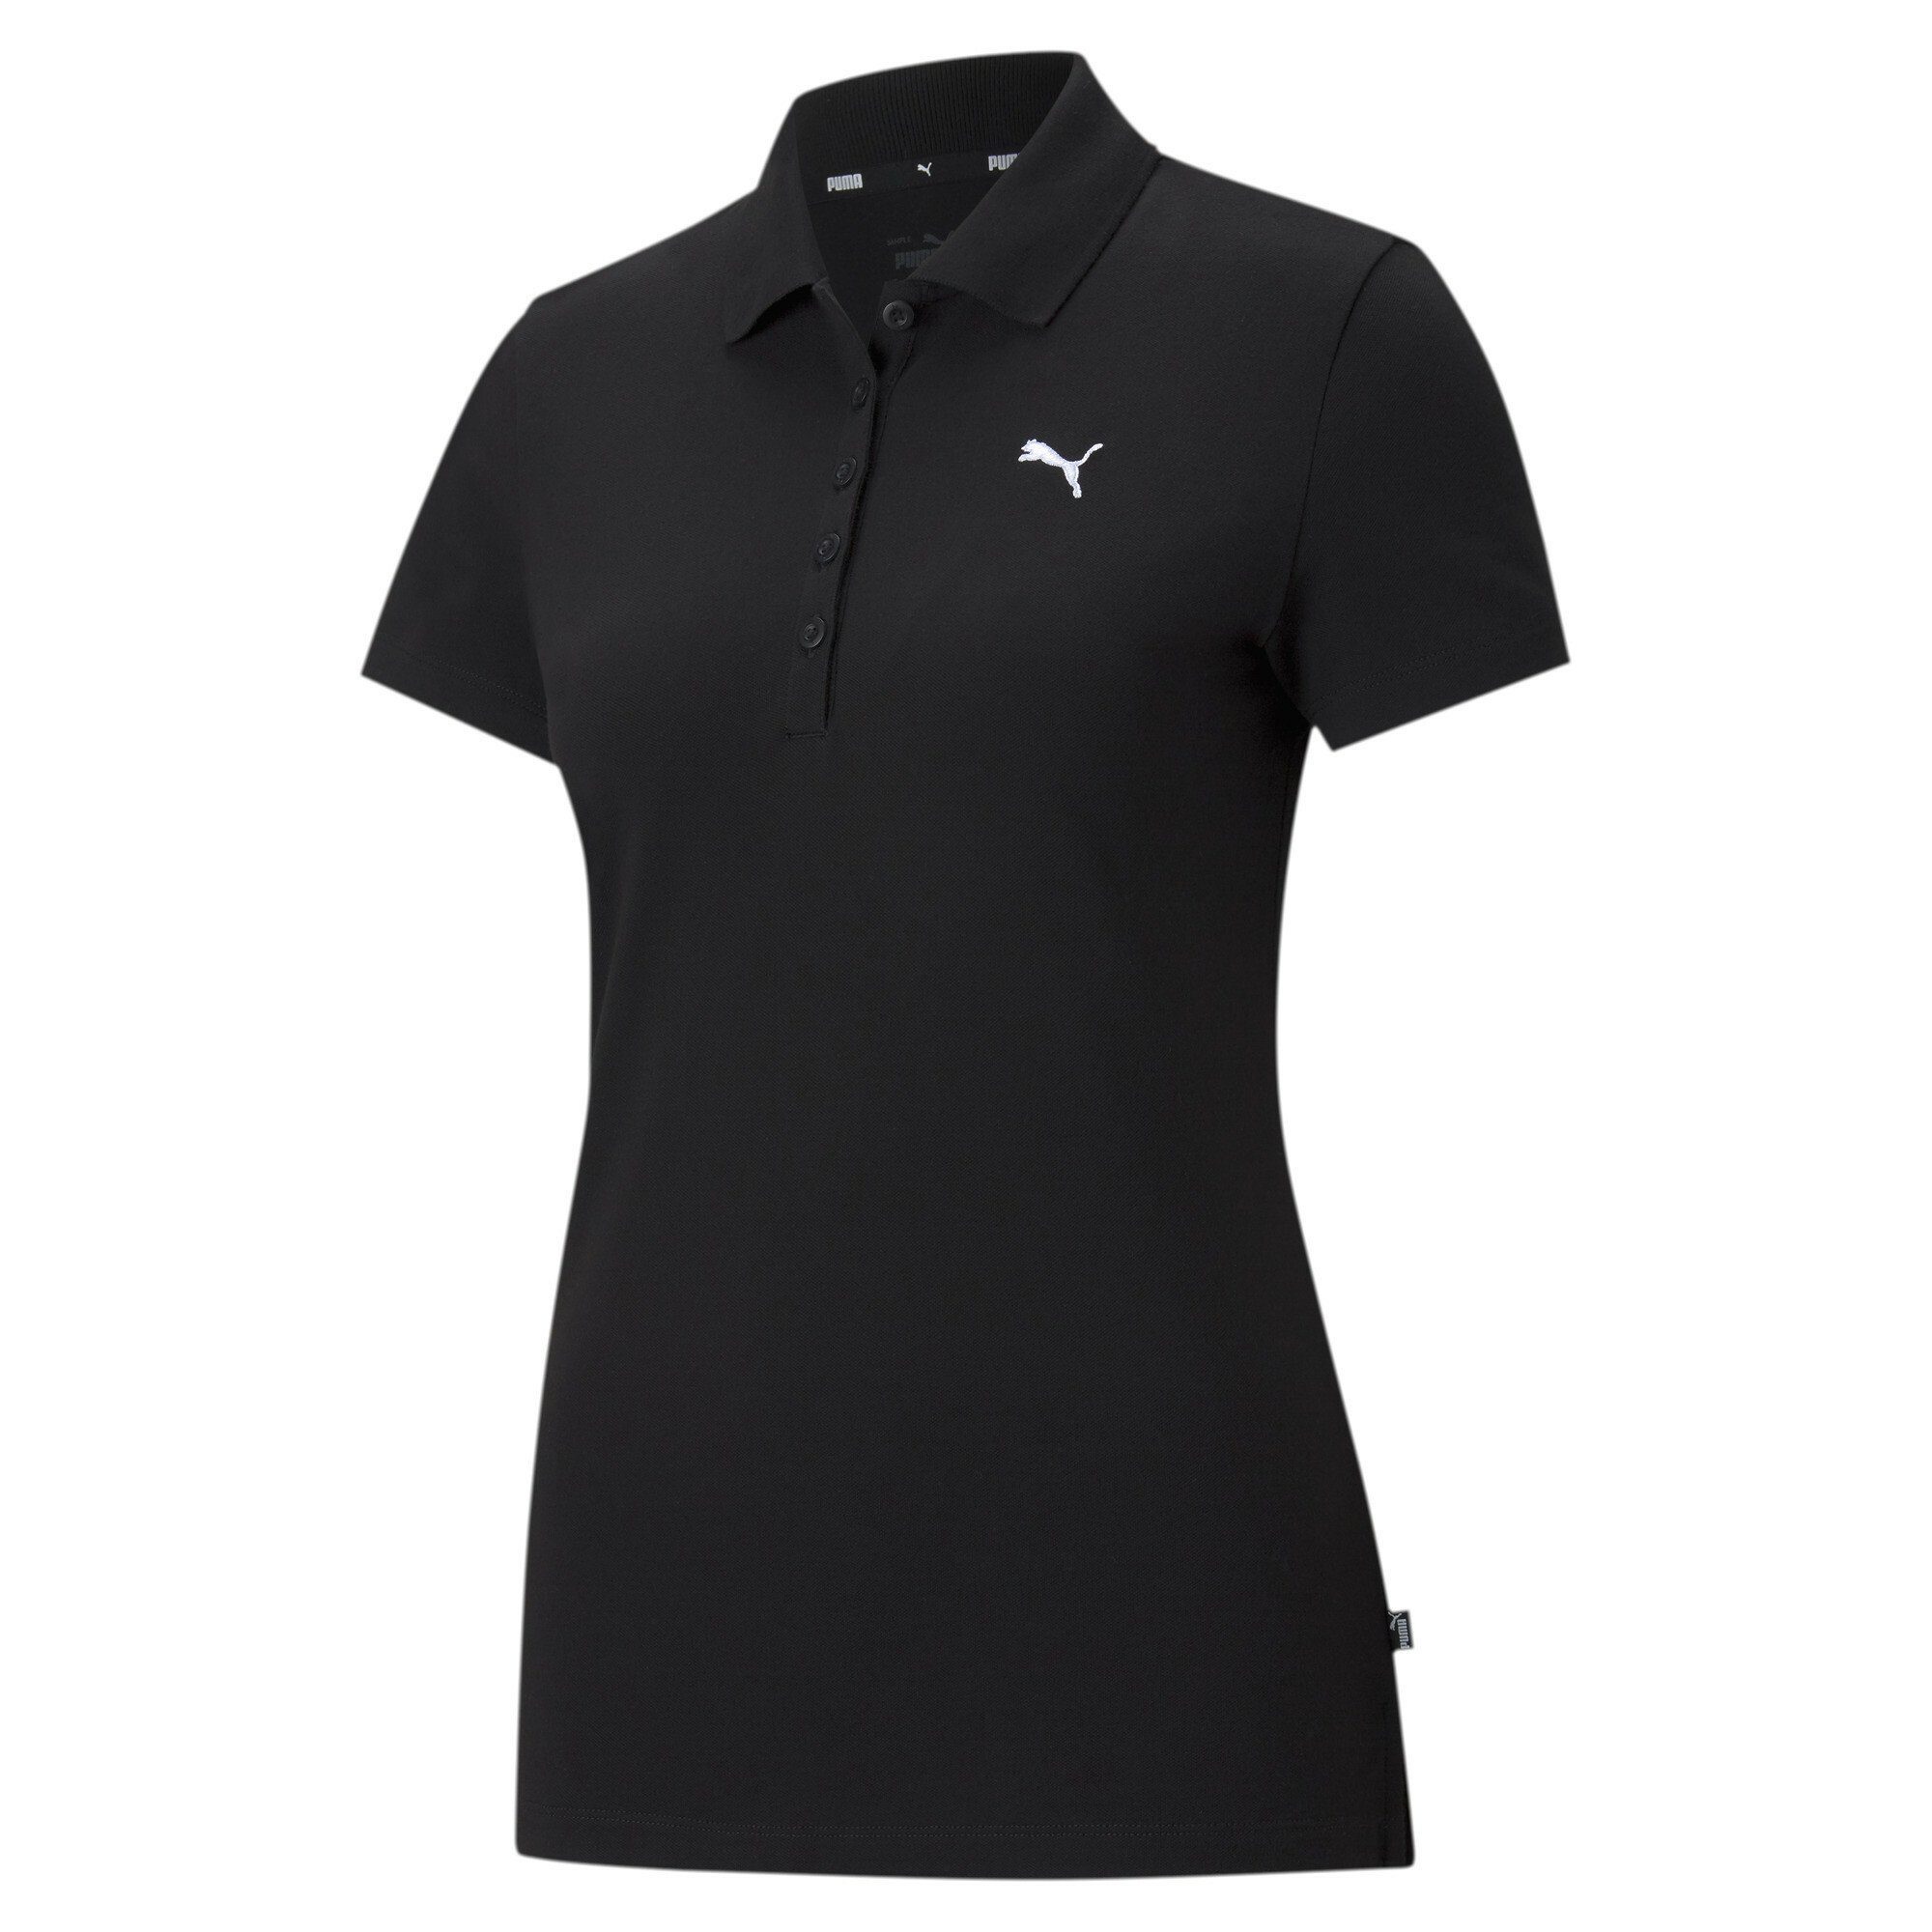 Schwarze Damen Poloshirts online kaufen » Polohemden | OTTO